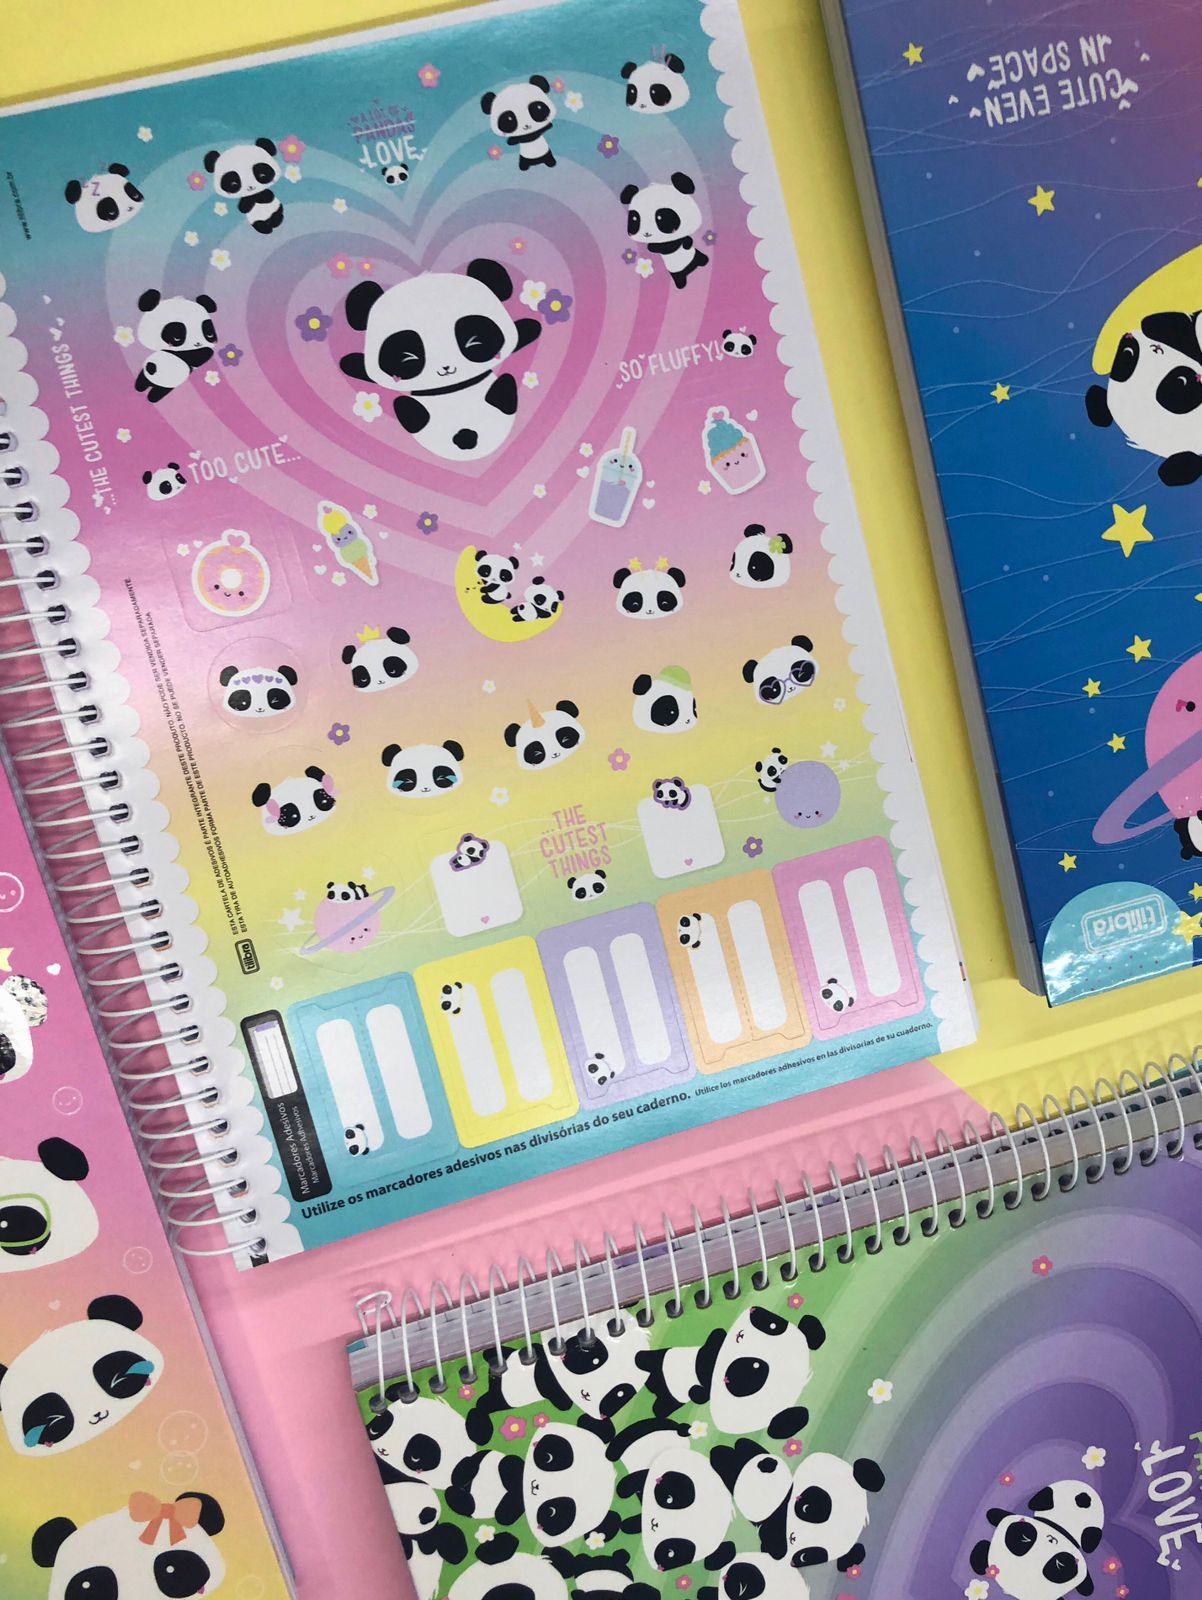 Caderno Universitário 10 matérias Panda Lovely Friend Tilibra